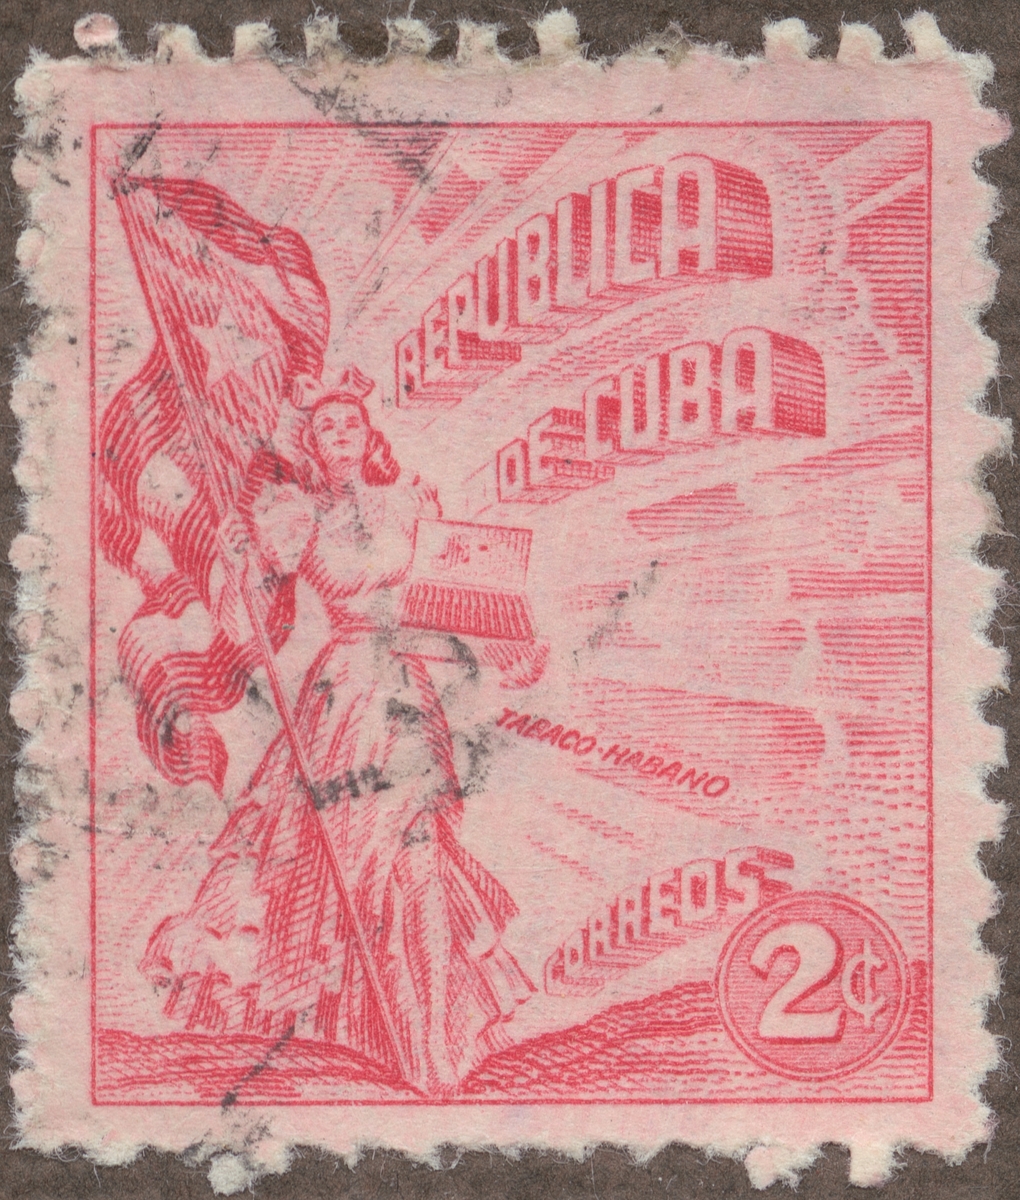 Frimärke ur Gösta Bodmans filatelistiska motivsamling, påbörjad 1950.
Frimärke från Cuba, 1948. Motiv av kvinnosymbol för friheten med cigrarrlåda och flagga.